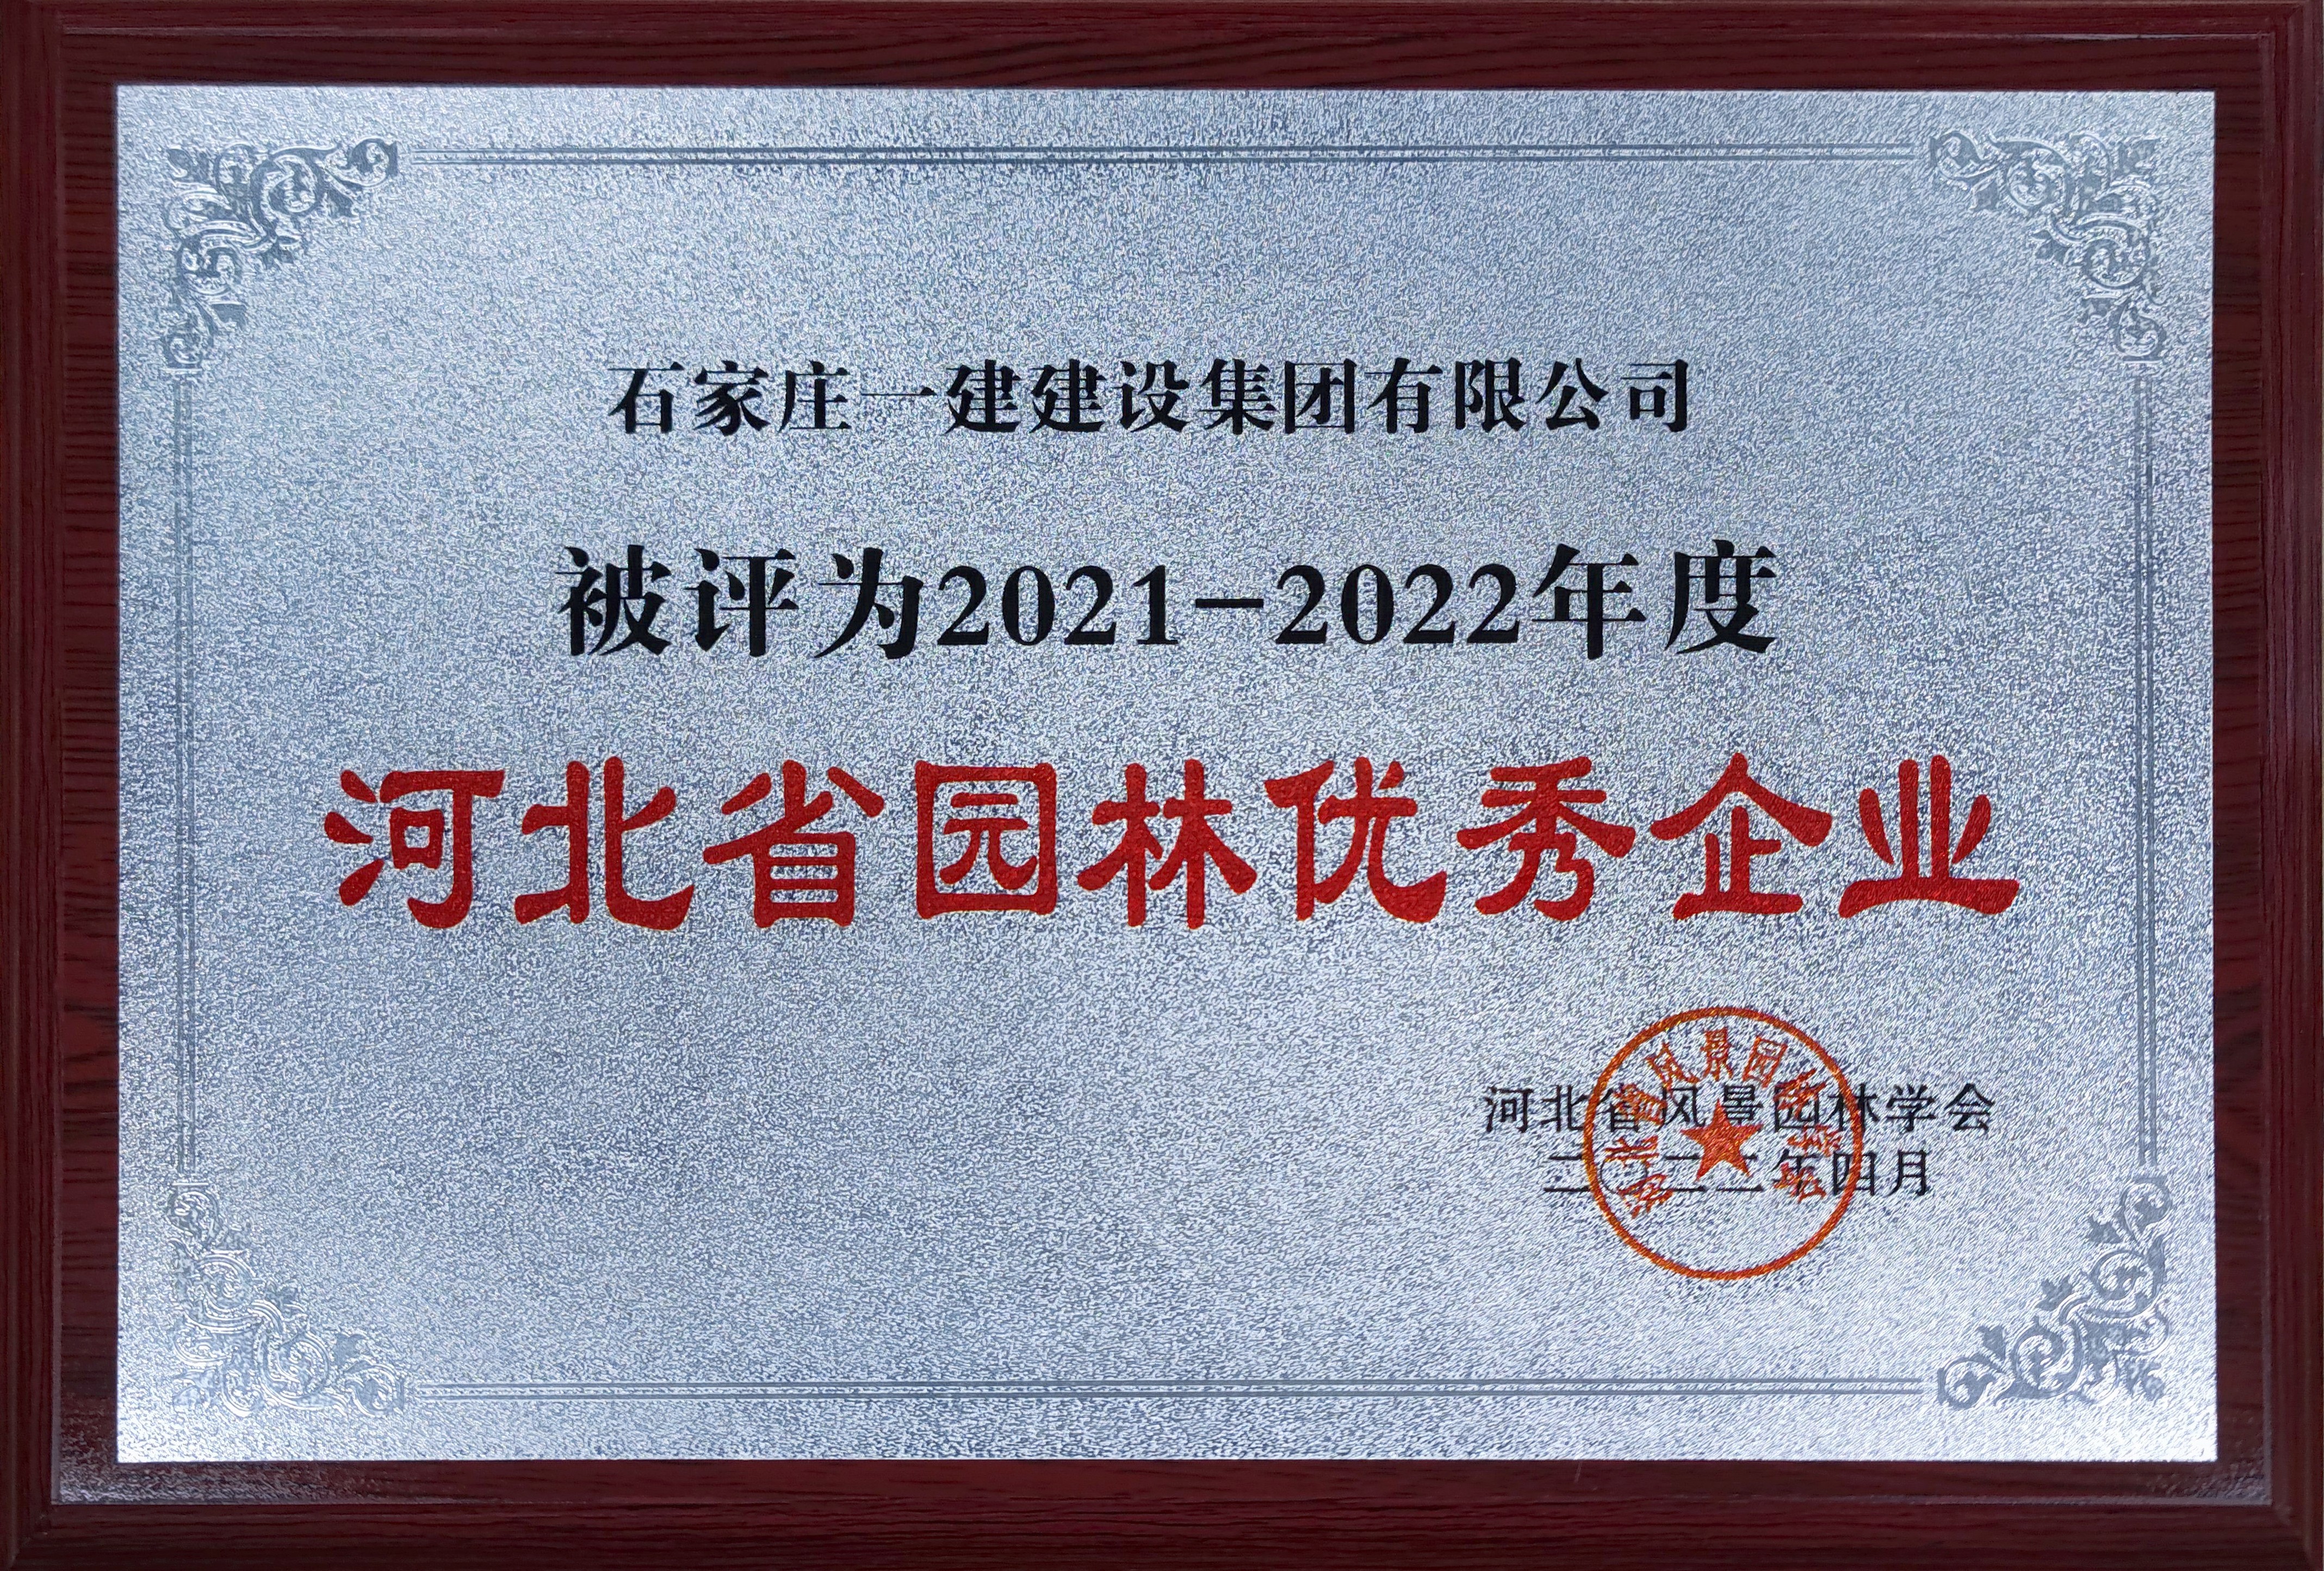 2021-2022年度河北省园林优秀企业